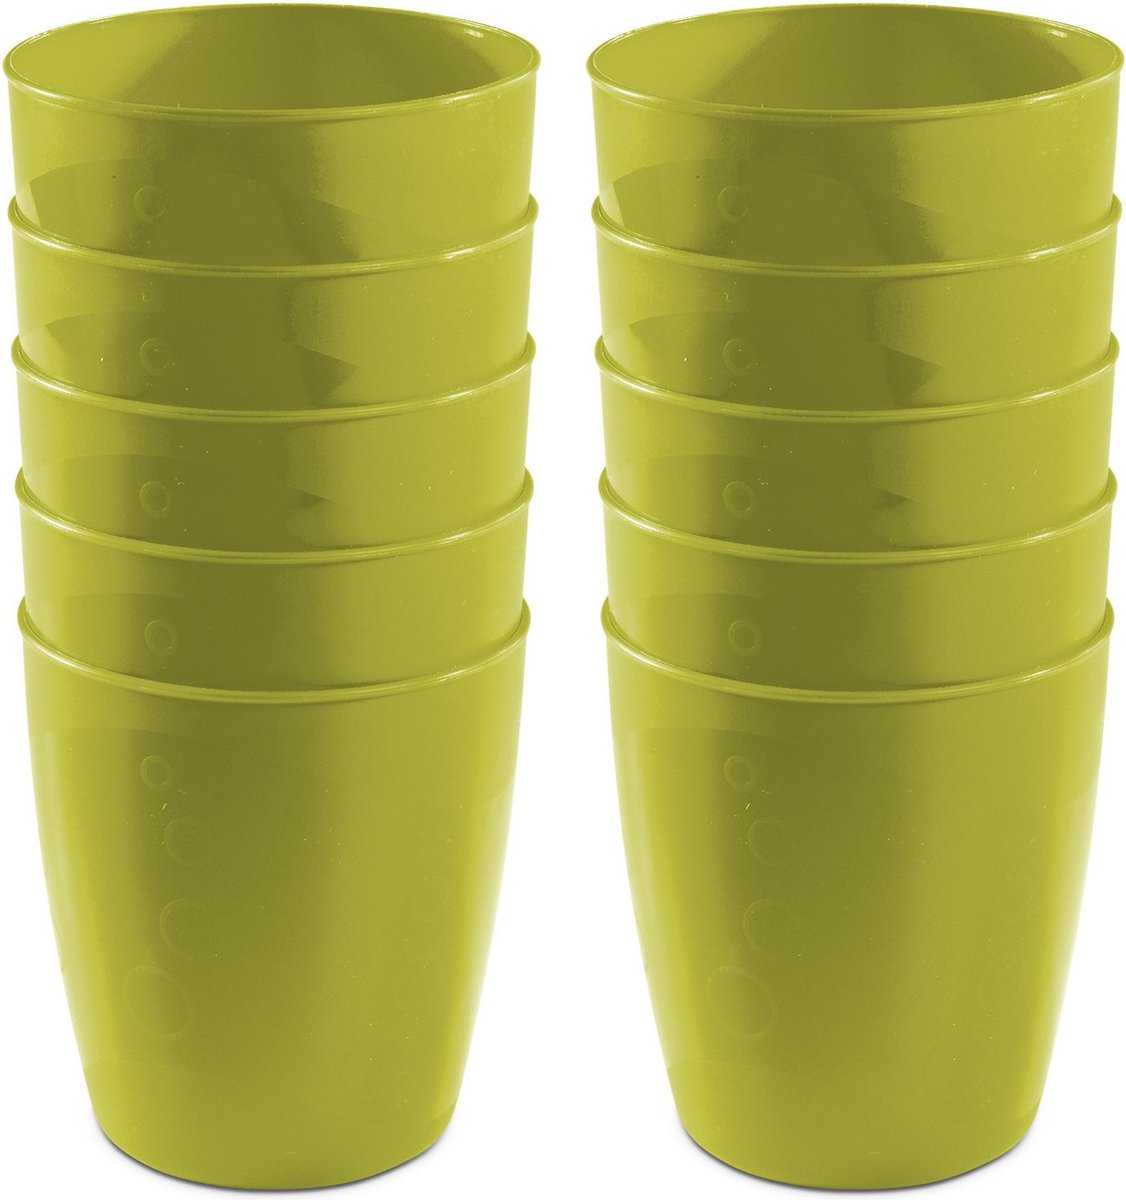 15x drinkbekers van kunststof 300 ml in het groenï¿½- Limonade bekers - Campingservies/picknickservies